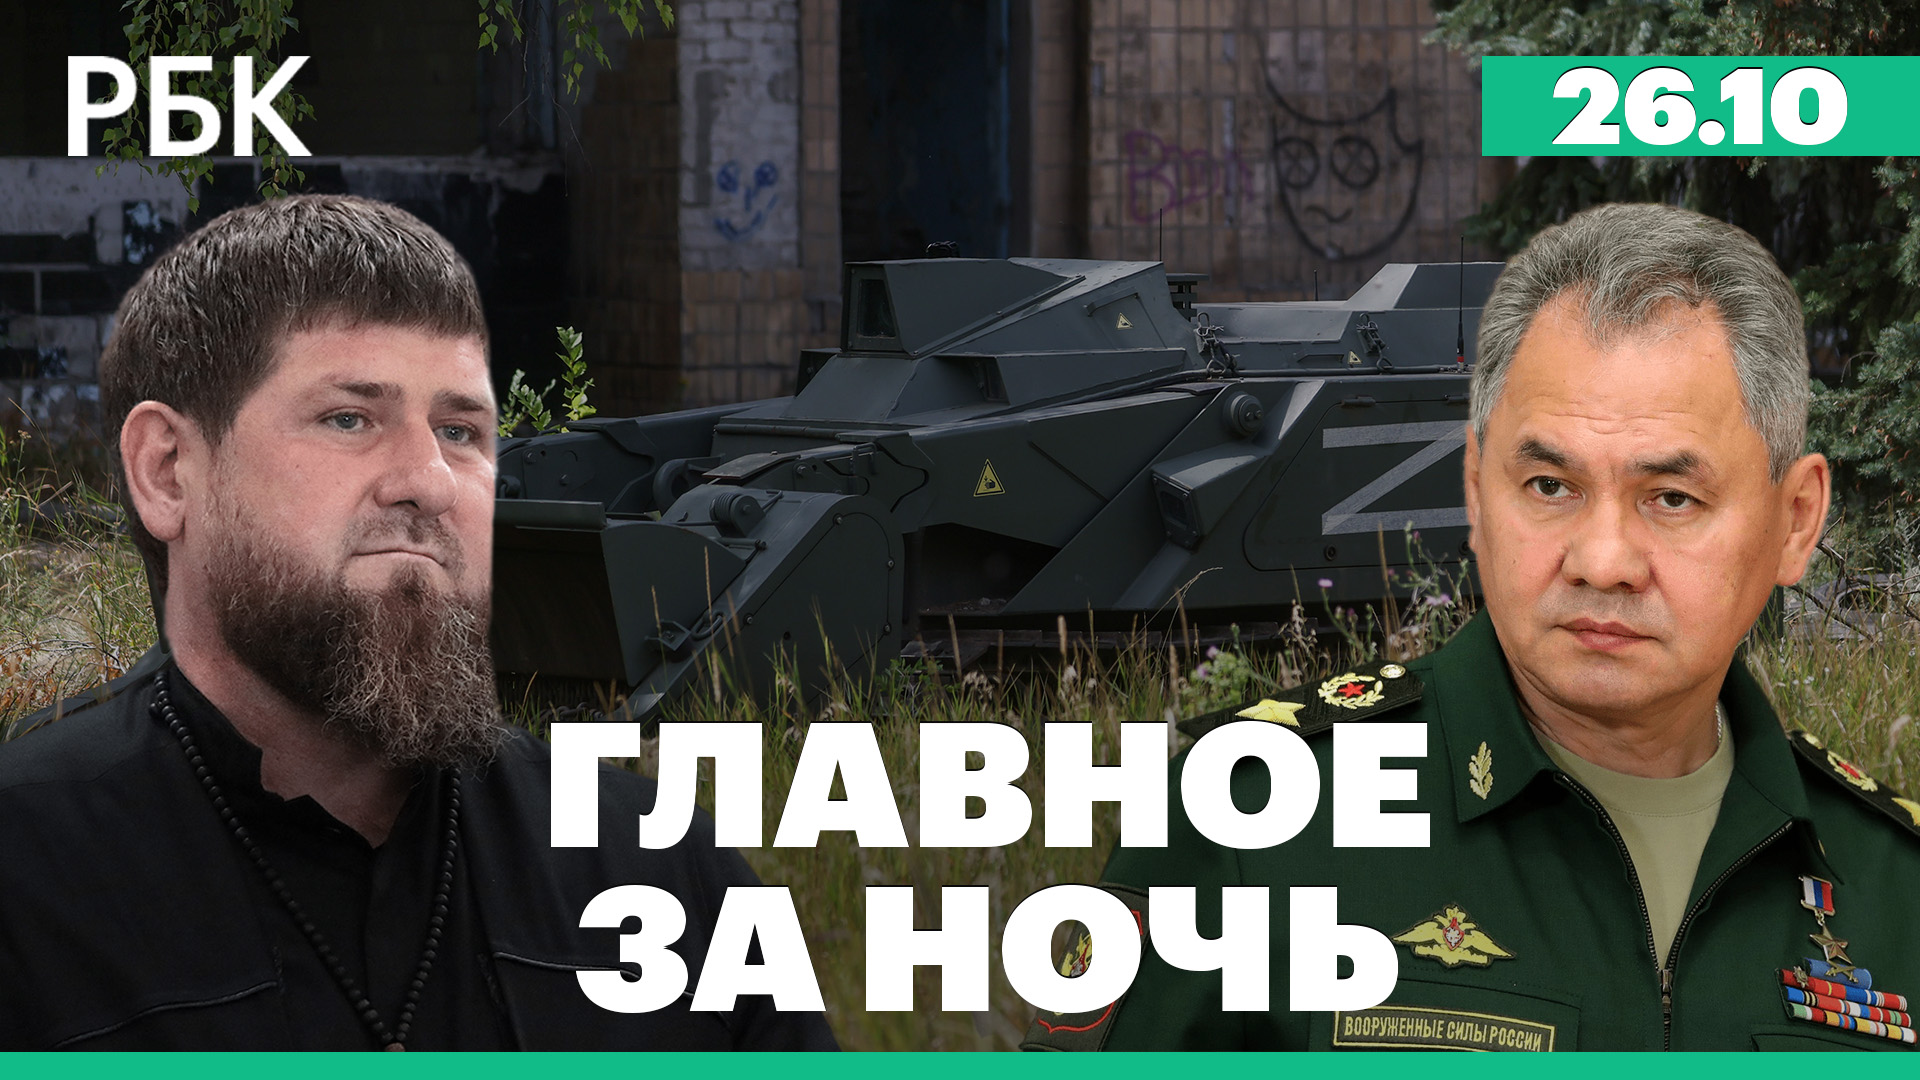 Кадыров заявил о джихаде и призвал добывать западное оружие. США передали Украине комплексы NASAMS